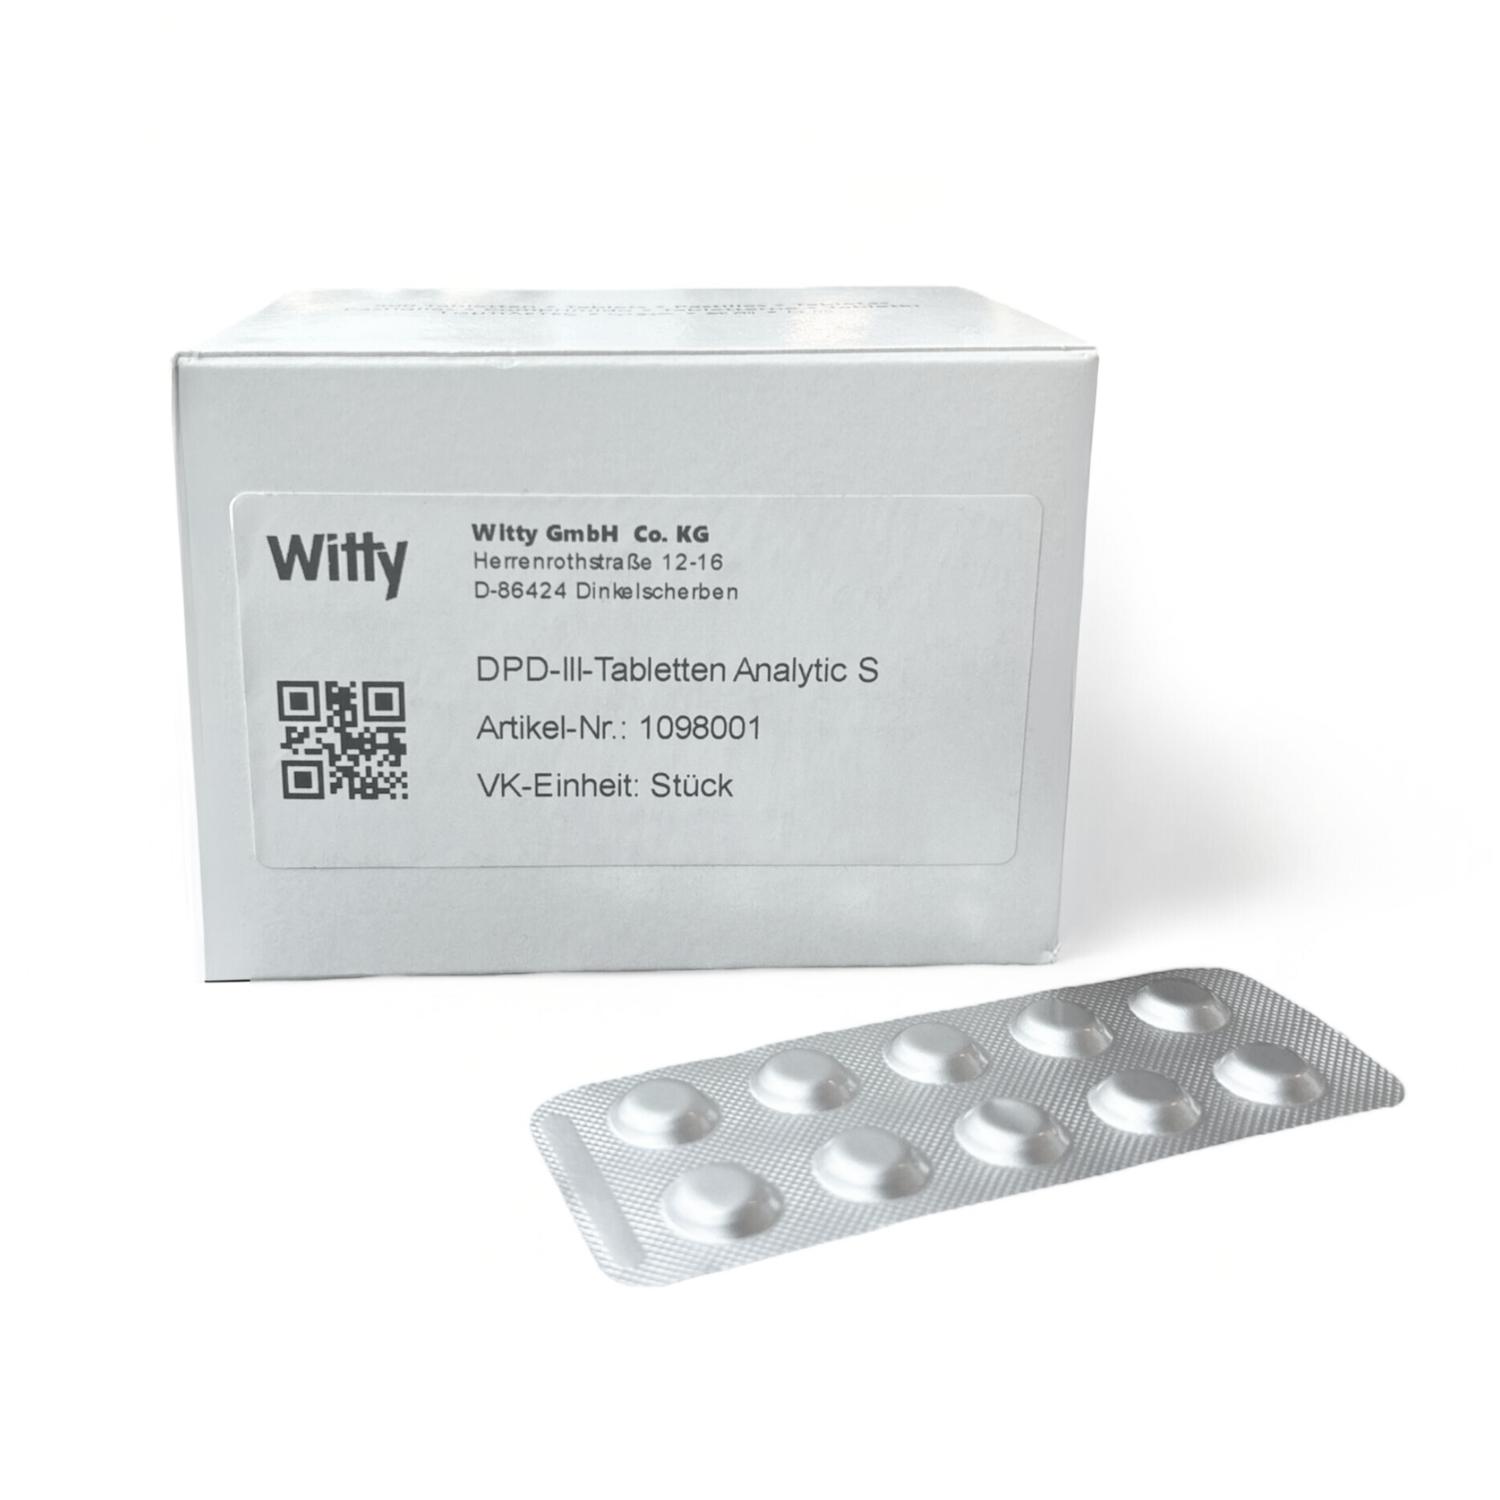 DPD-III-Tabletten Analytic S